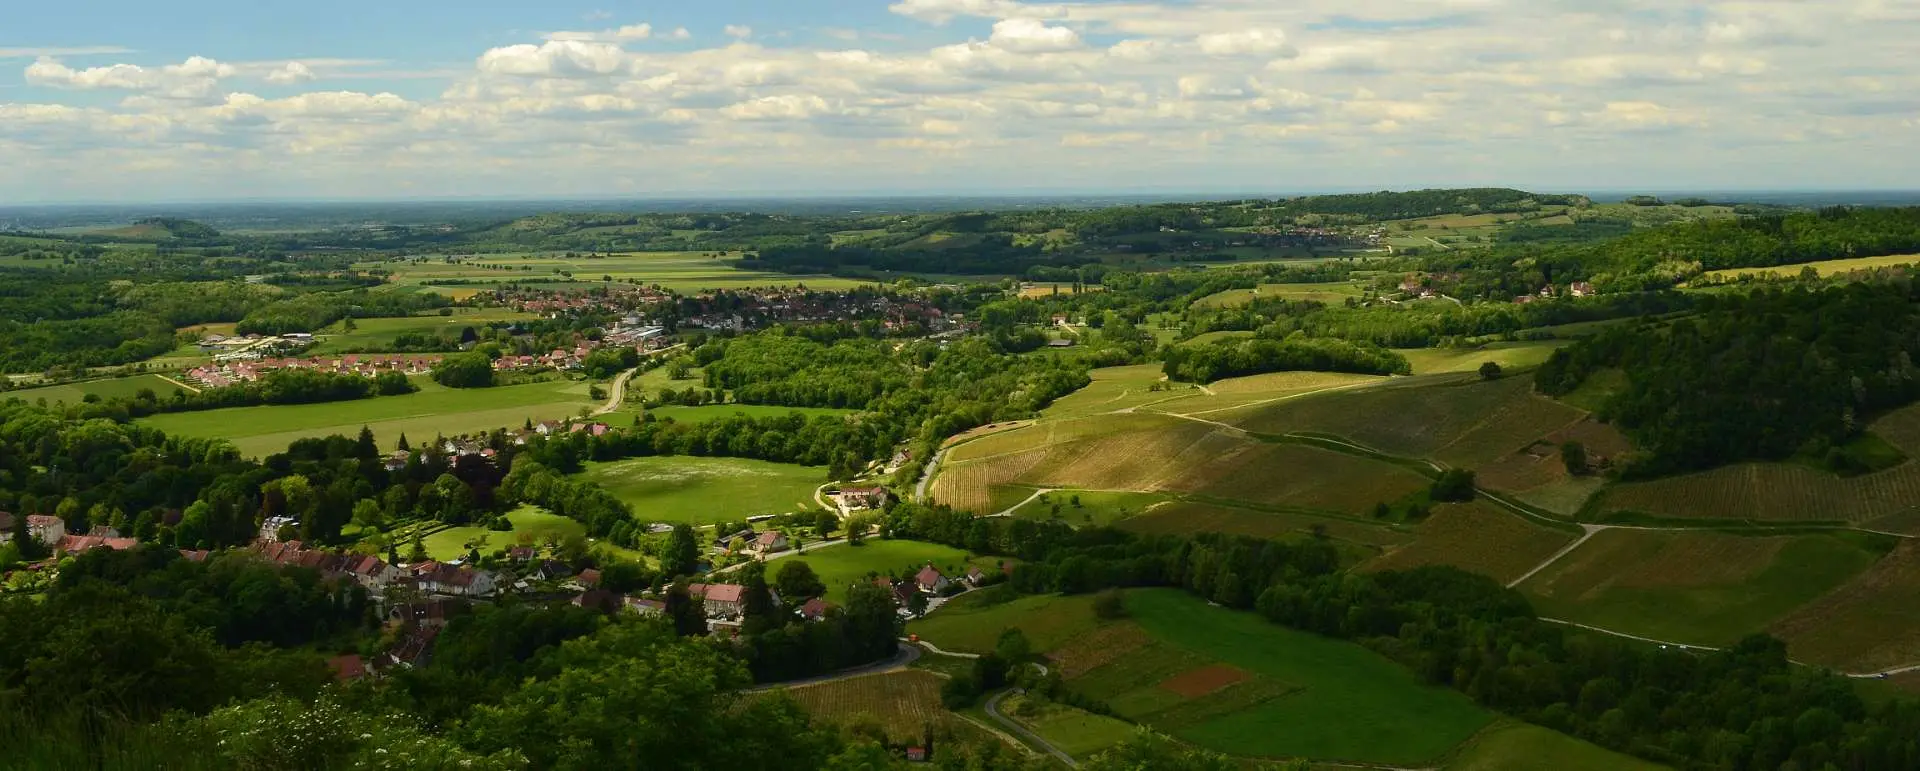 Bourgogne-Franche-Comté - City villas ideal for group stays